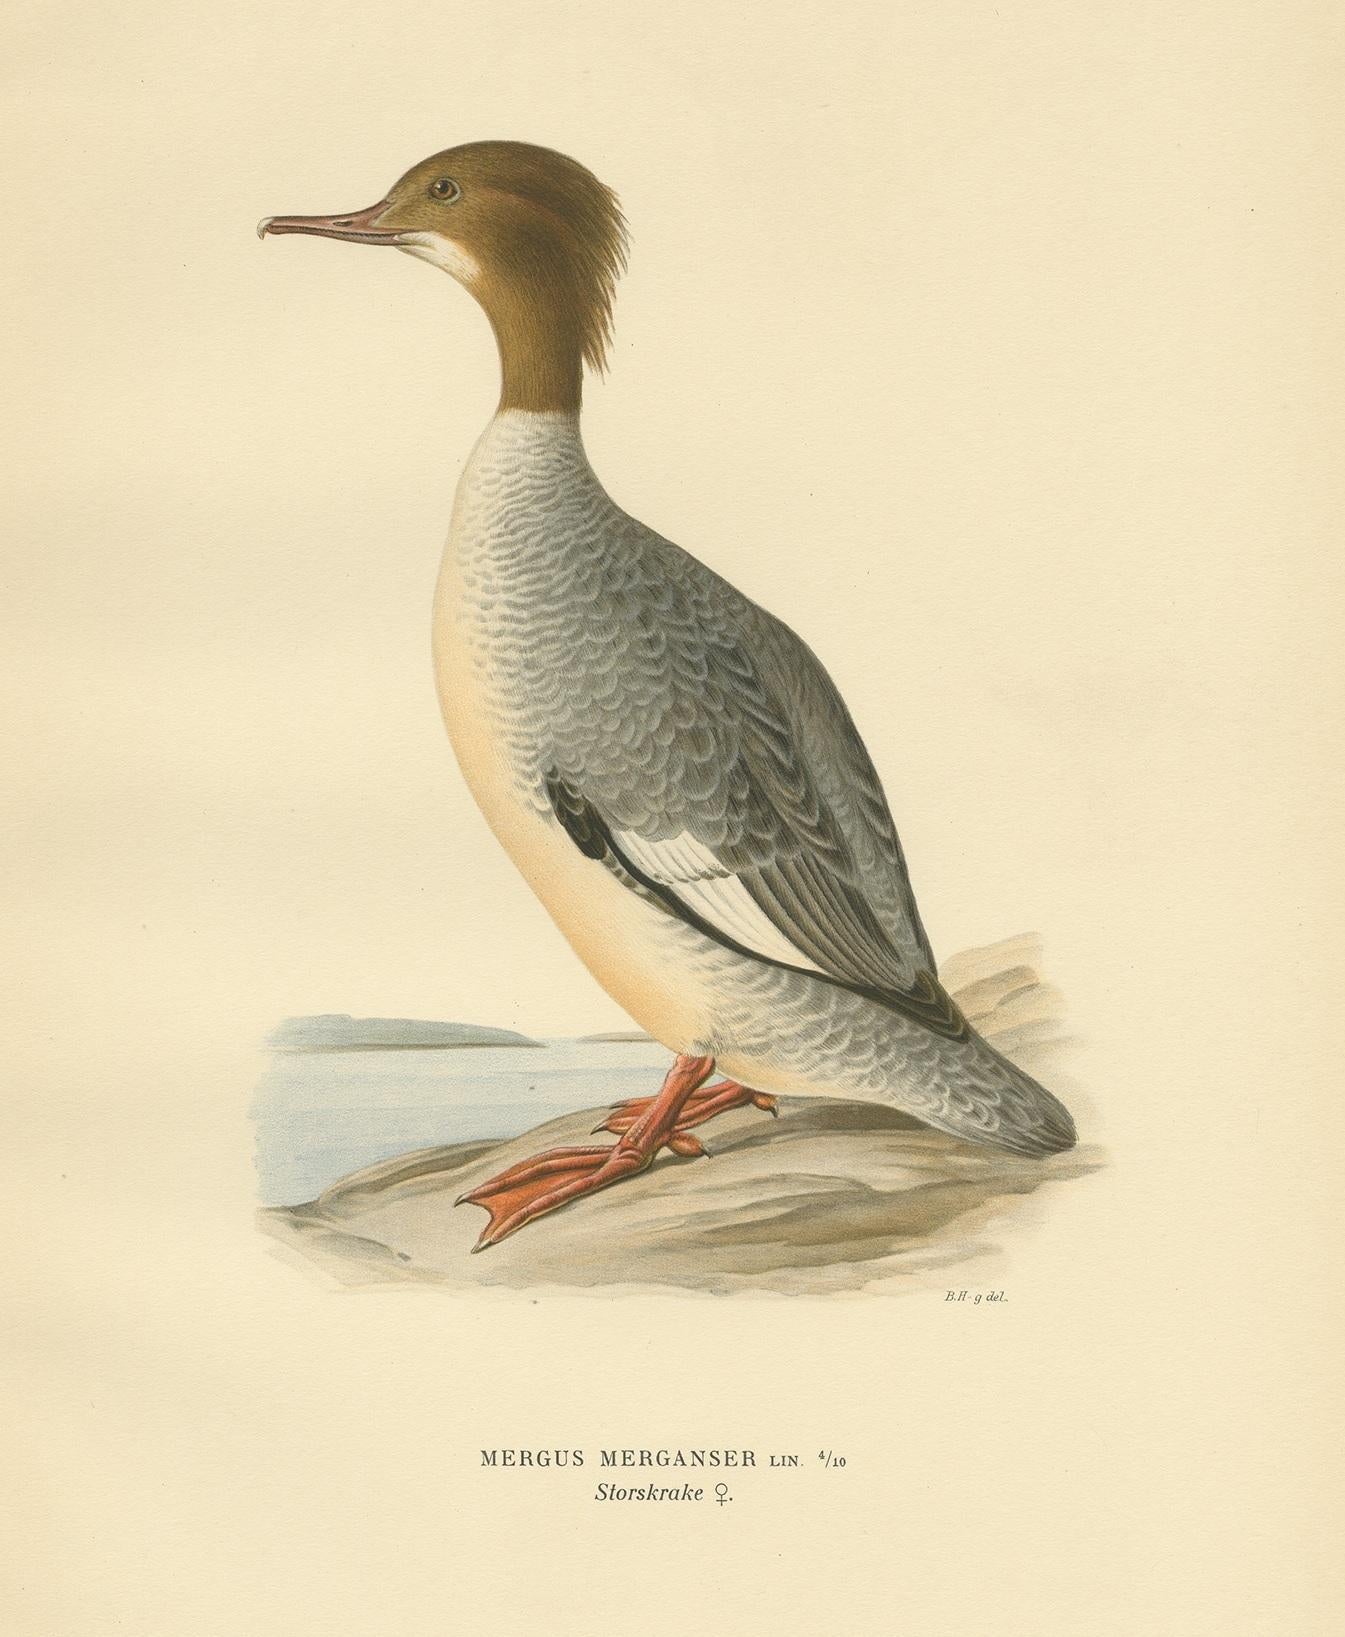 Antiker Vogeldruck mit dem Titel 'Mergus Merganser'. Alter Vogeldruck, der den weiblichen Gänsesäger darstellt. Dieser Druck stammt aus 